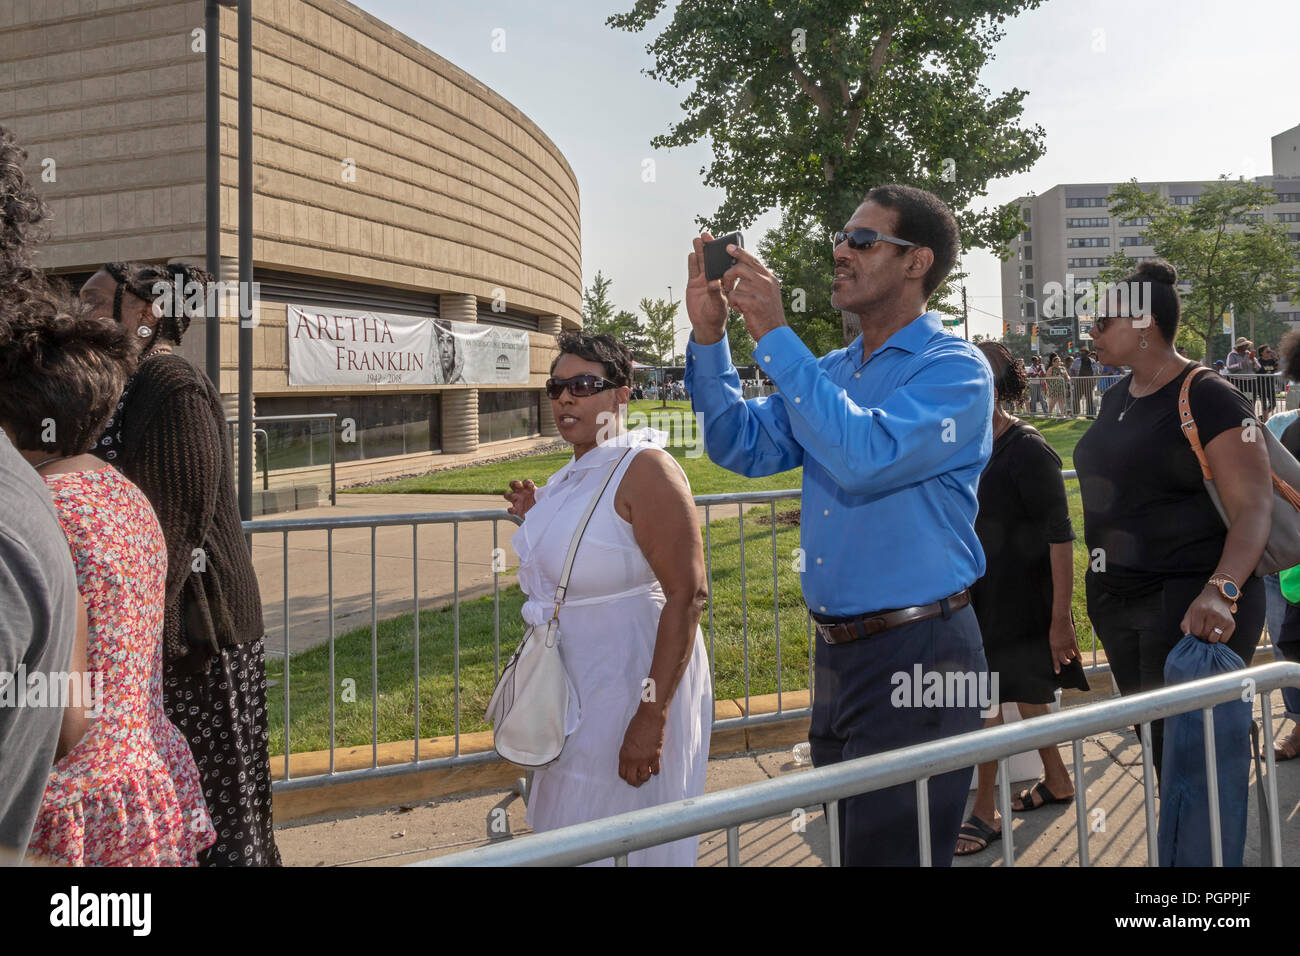 Detroit, Michigan, EE.UU. - 28 de agosto de 2018 - Miles de personas esperando en largas colas para entrar en el Museo Charles H. Wright de historia americana africana para pagar últimos respectos a Aretha Franklin durante los dos días de la vista del público. Franklin murió el 16 de agosto. Crédito: Jim West/Alamy Live News Foto de stock